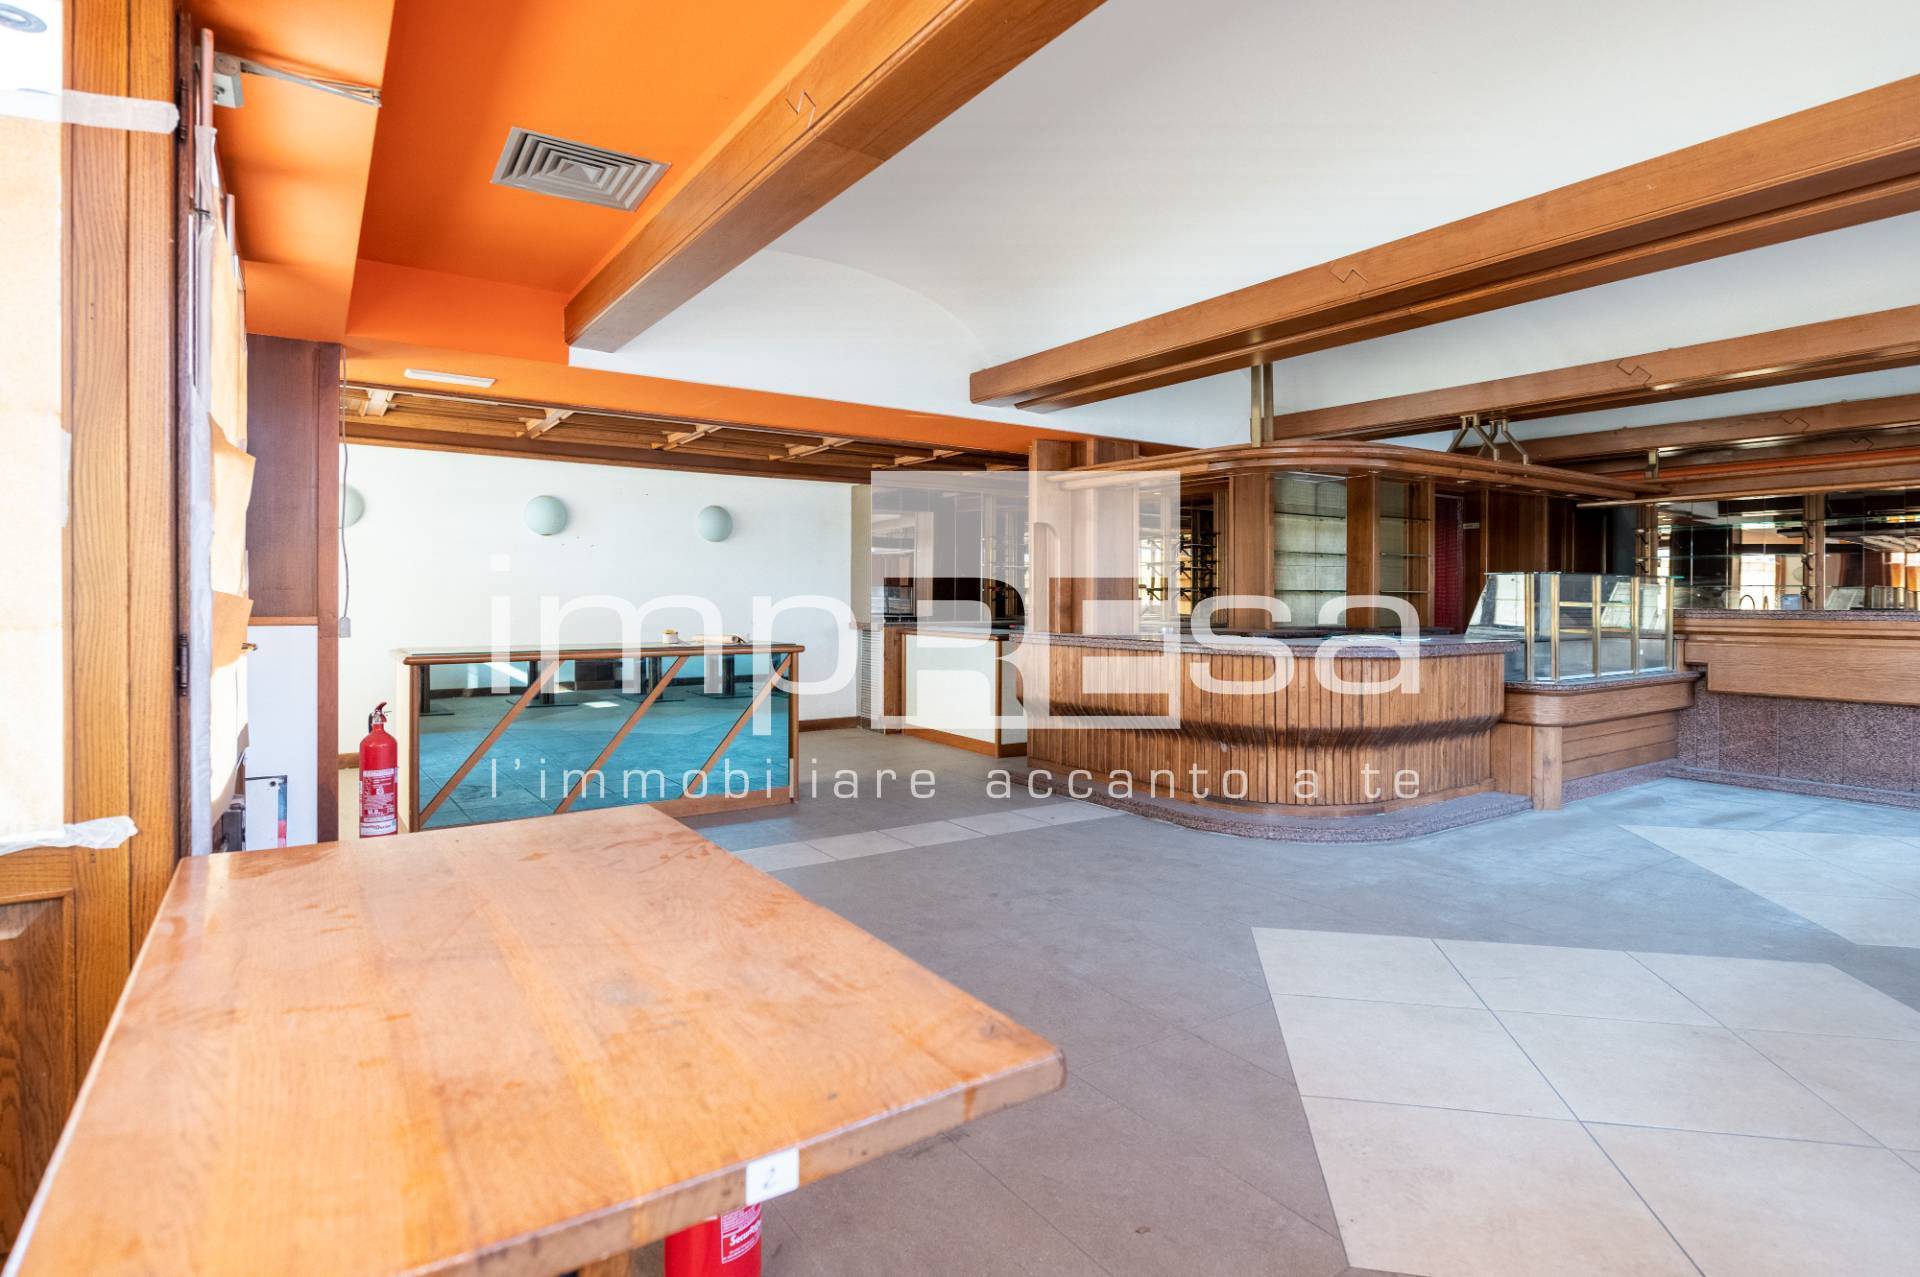 Villa in vendita a Morgano, 10 locali, zona ere, prezzo € 230.000 | PortaleAgenzieImmobiliari.it